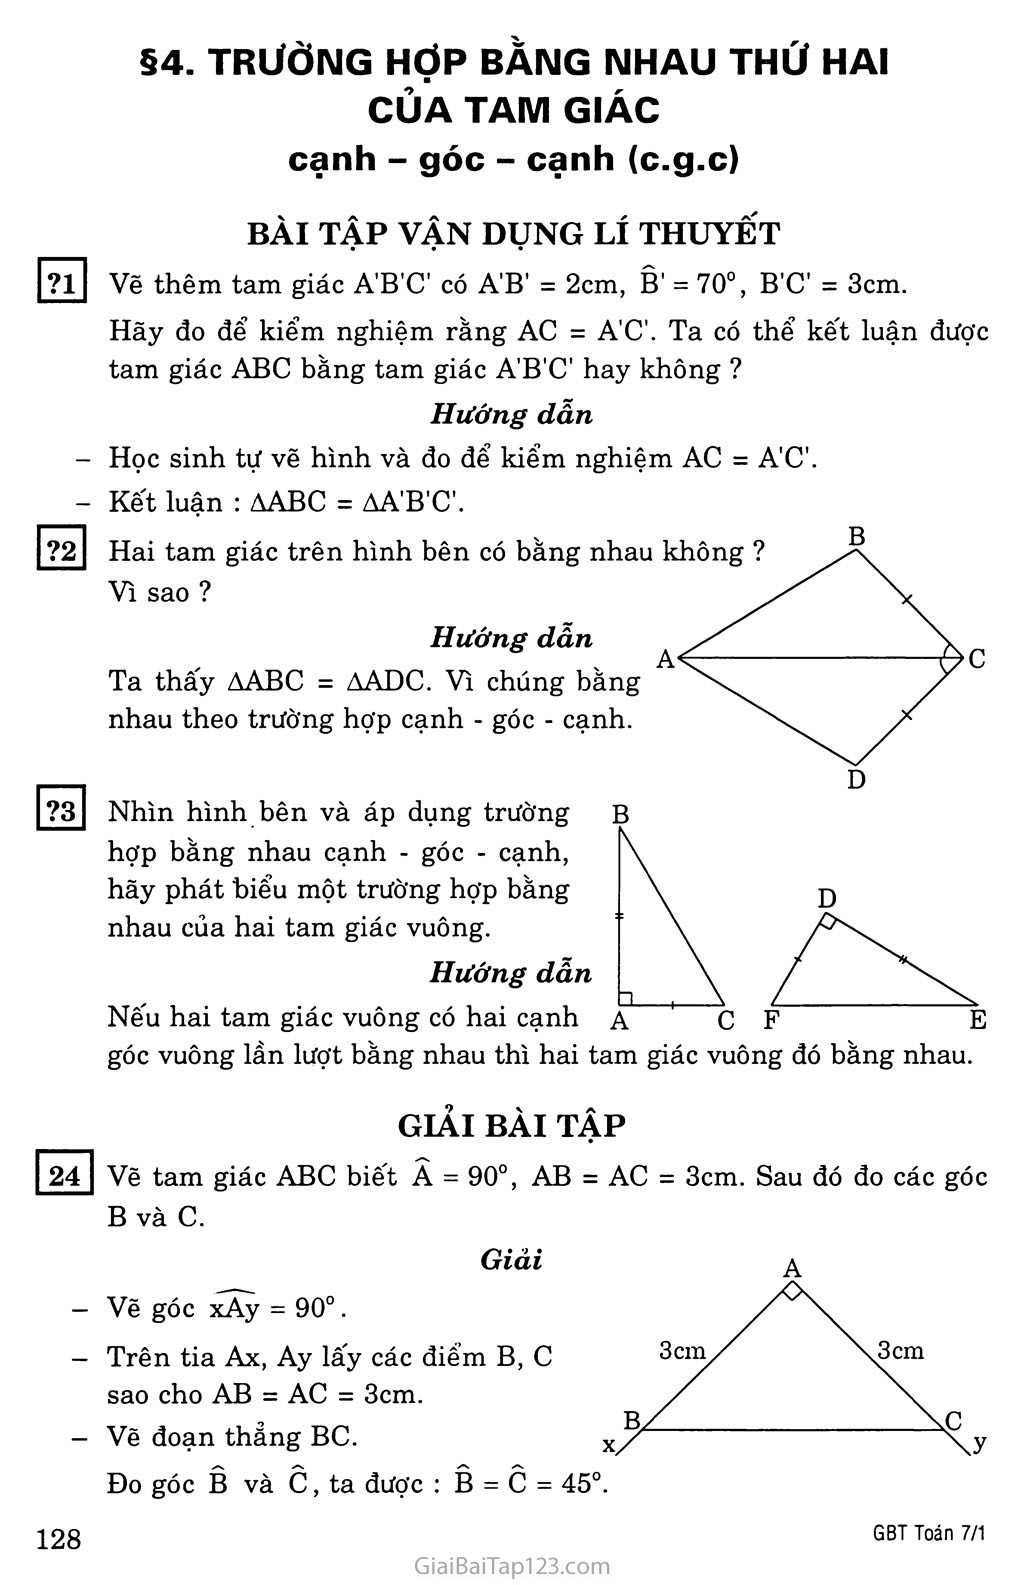 §4. Trường hợp bằng nhau thứ hai của tam giác: cạnh - góc - cạnh (c.g.c) trang 1